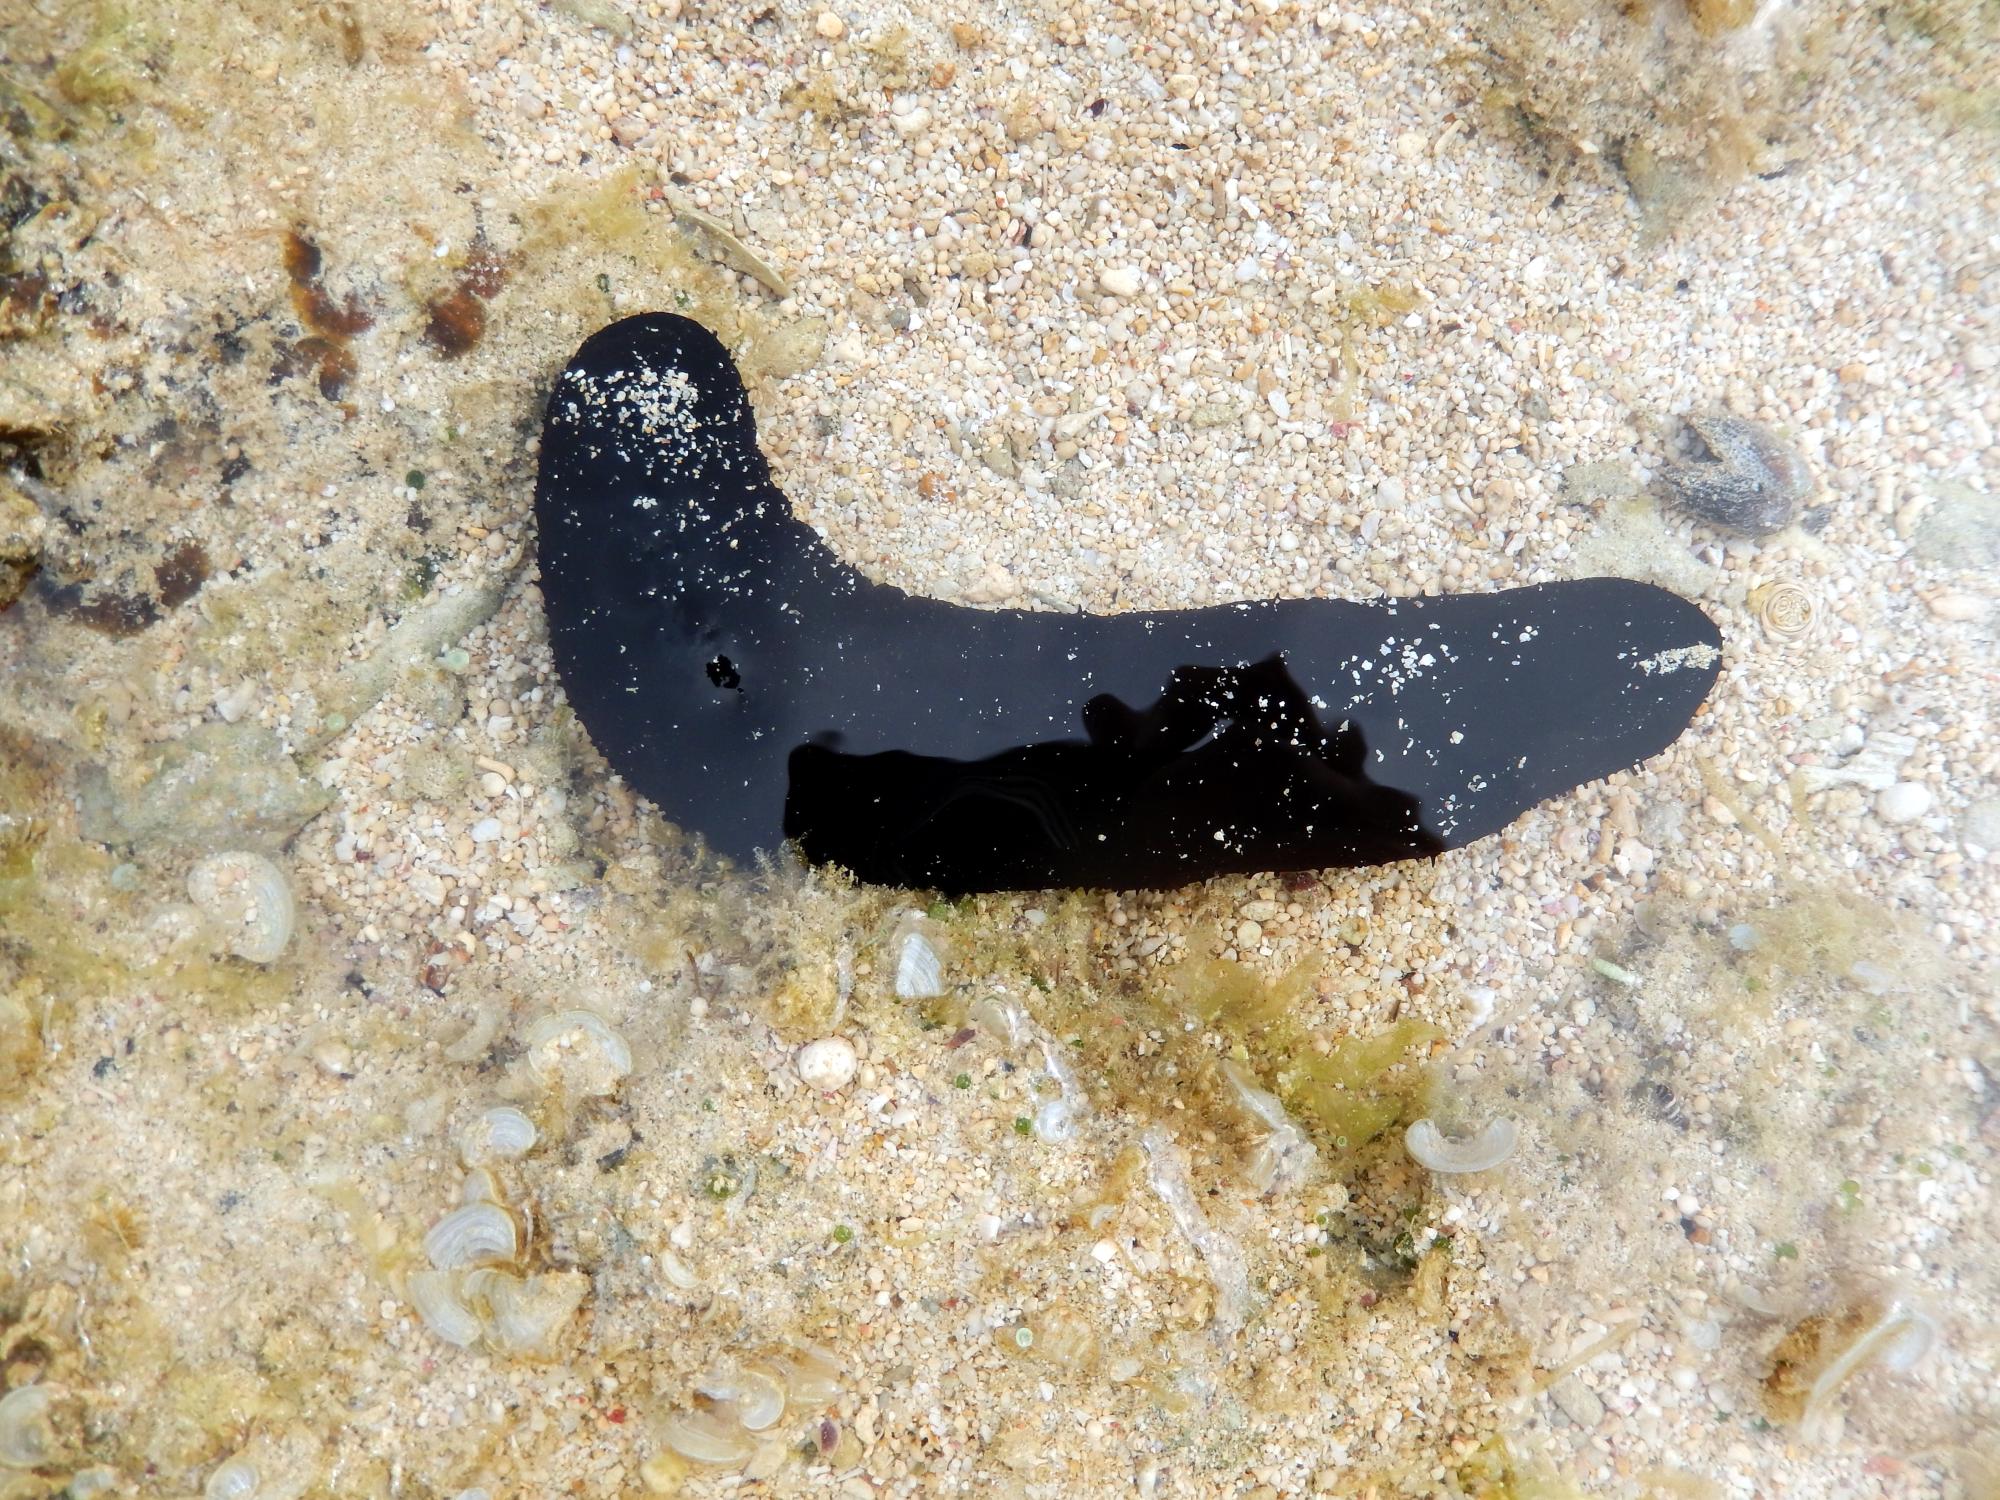 Okinawa - Slug #2